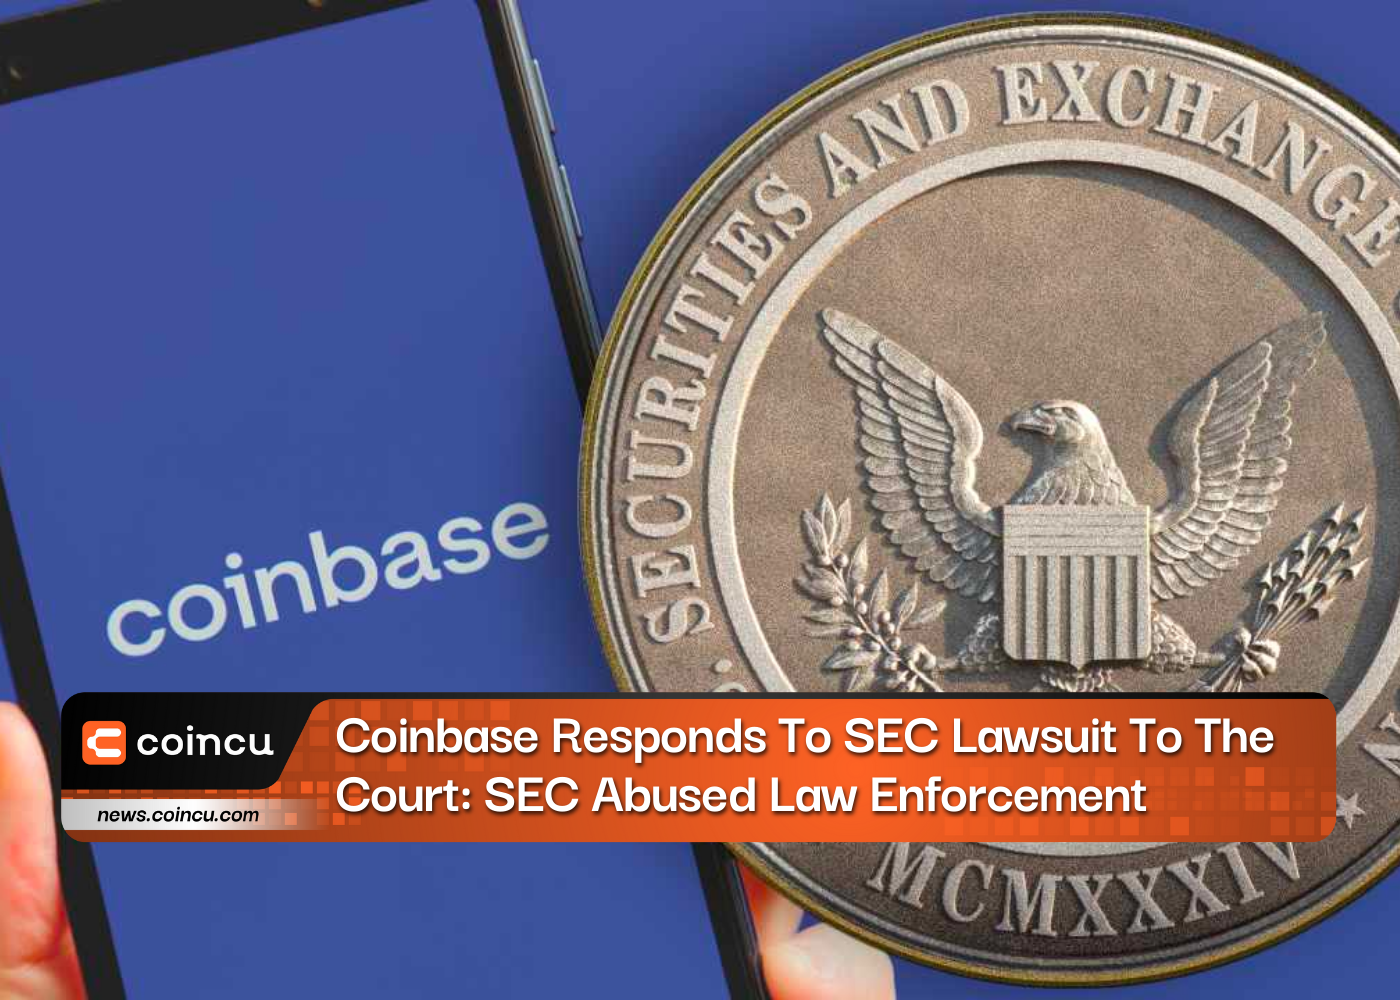 Coinbase responde a la demanda de la SEC ante el tribunal: la SEC abusó de la aplicación de la ley